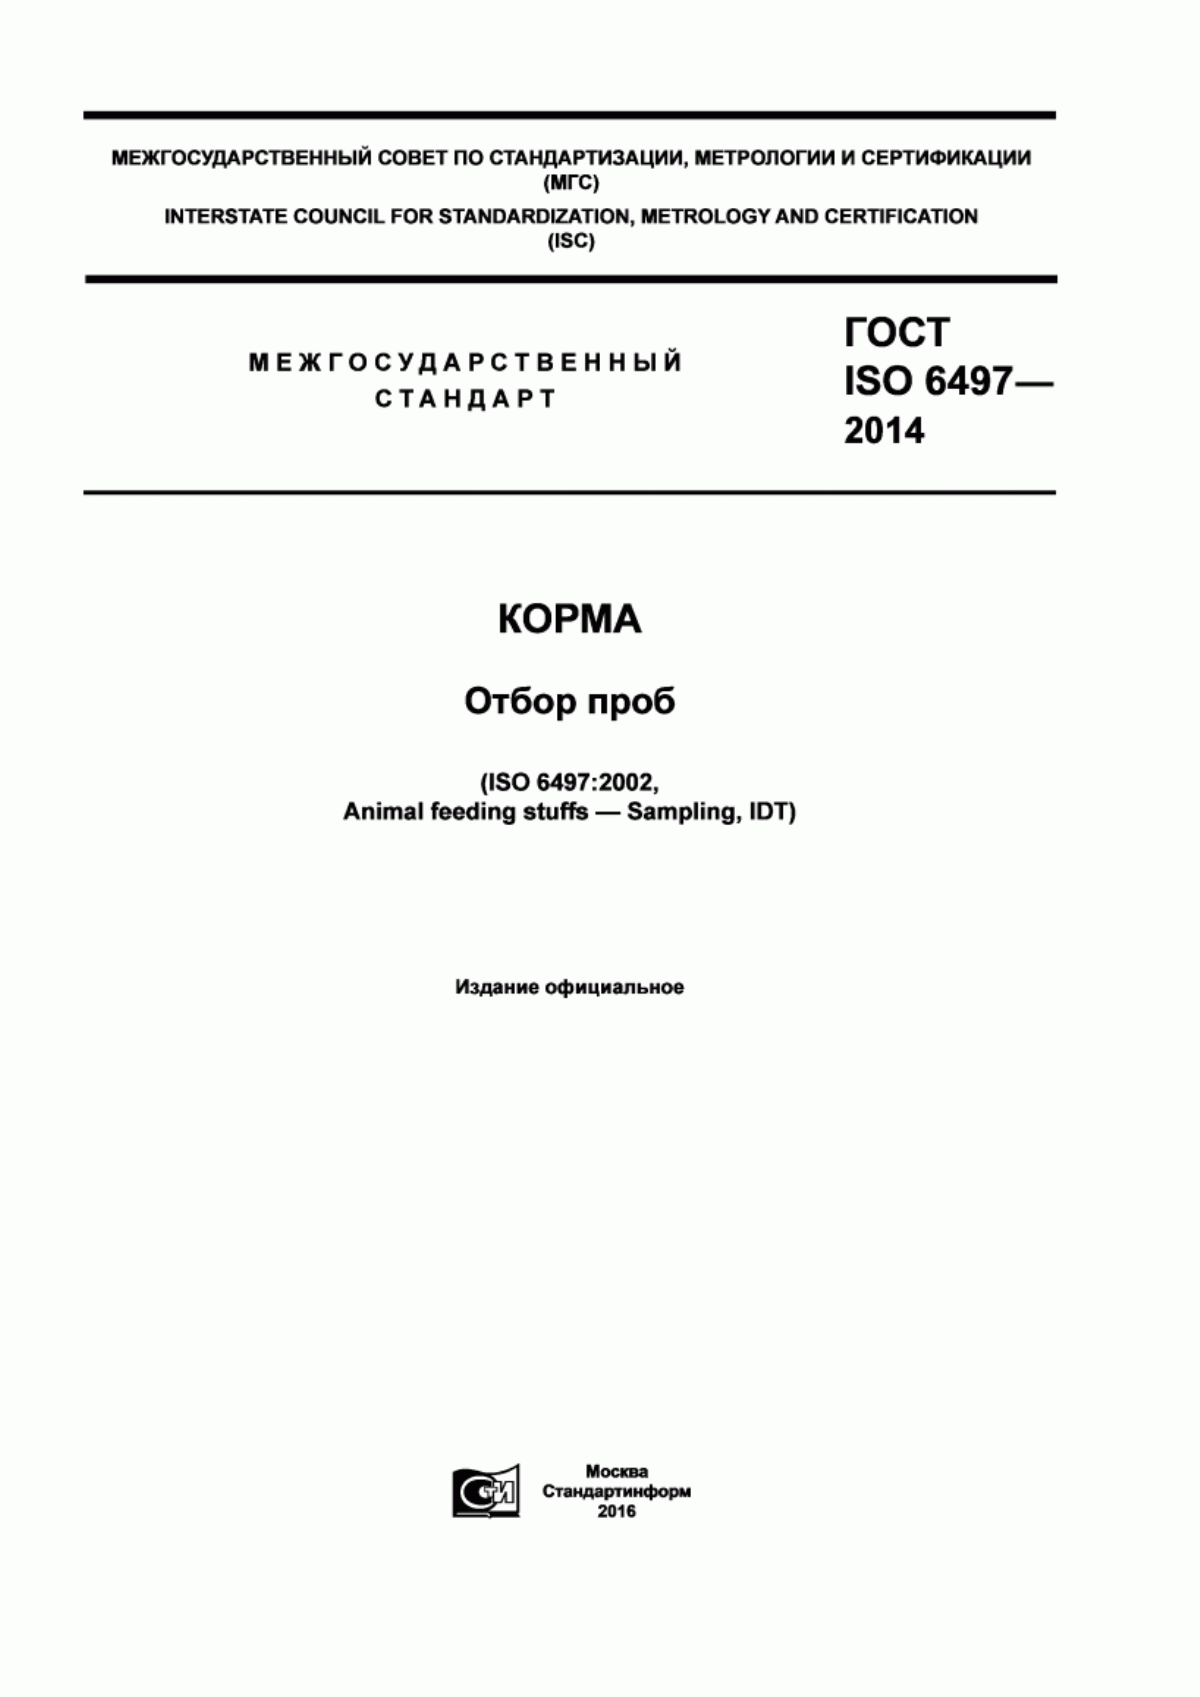 ГОСТ ISO 6497-2014 Корма. Отбор проб